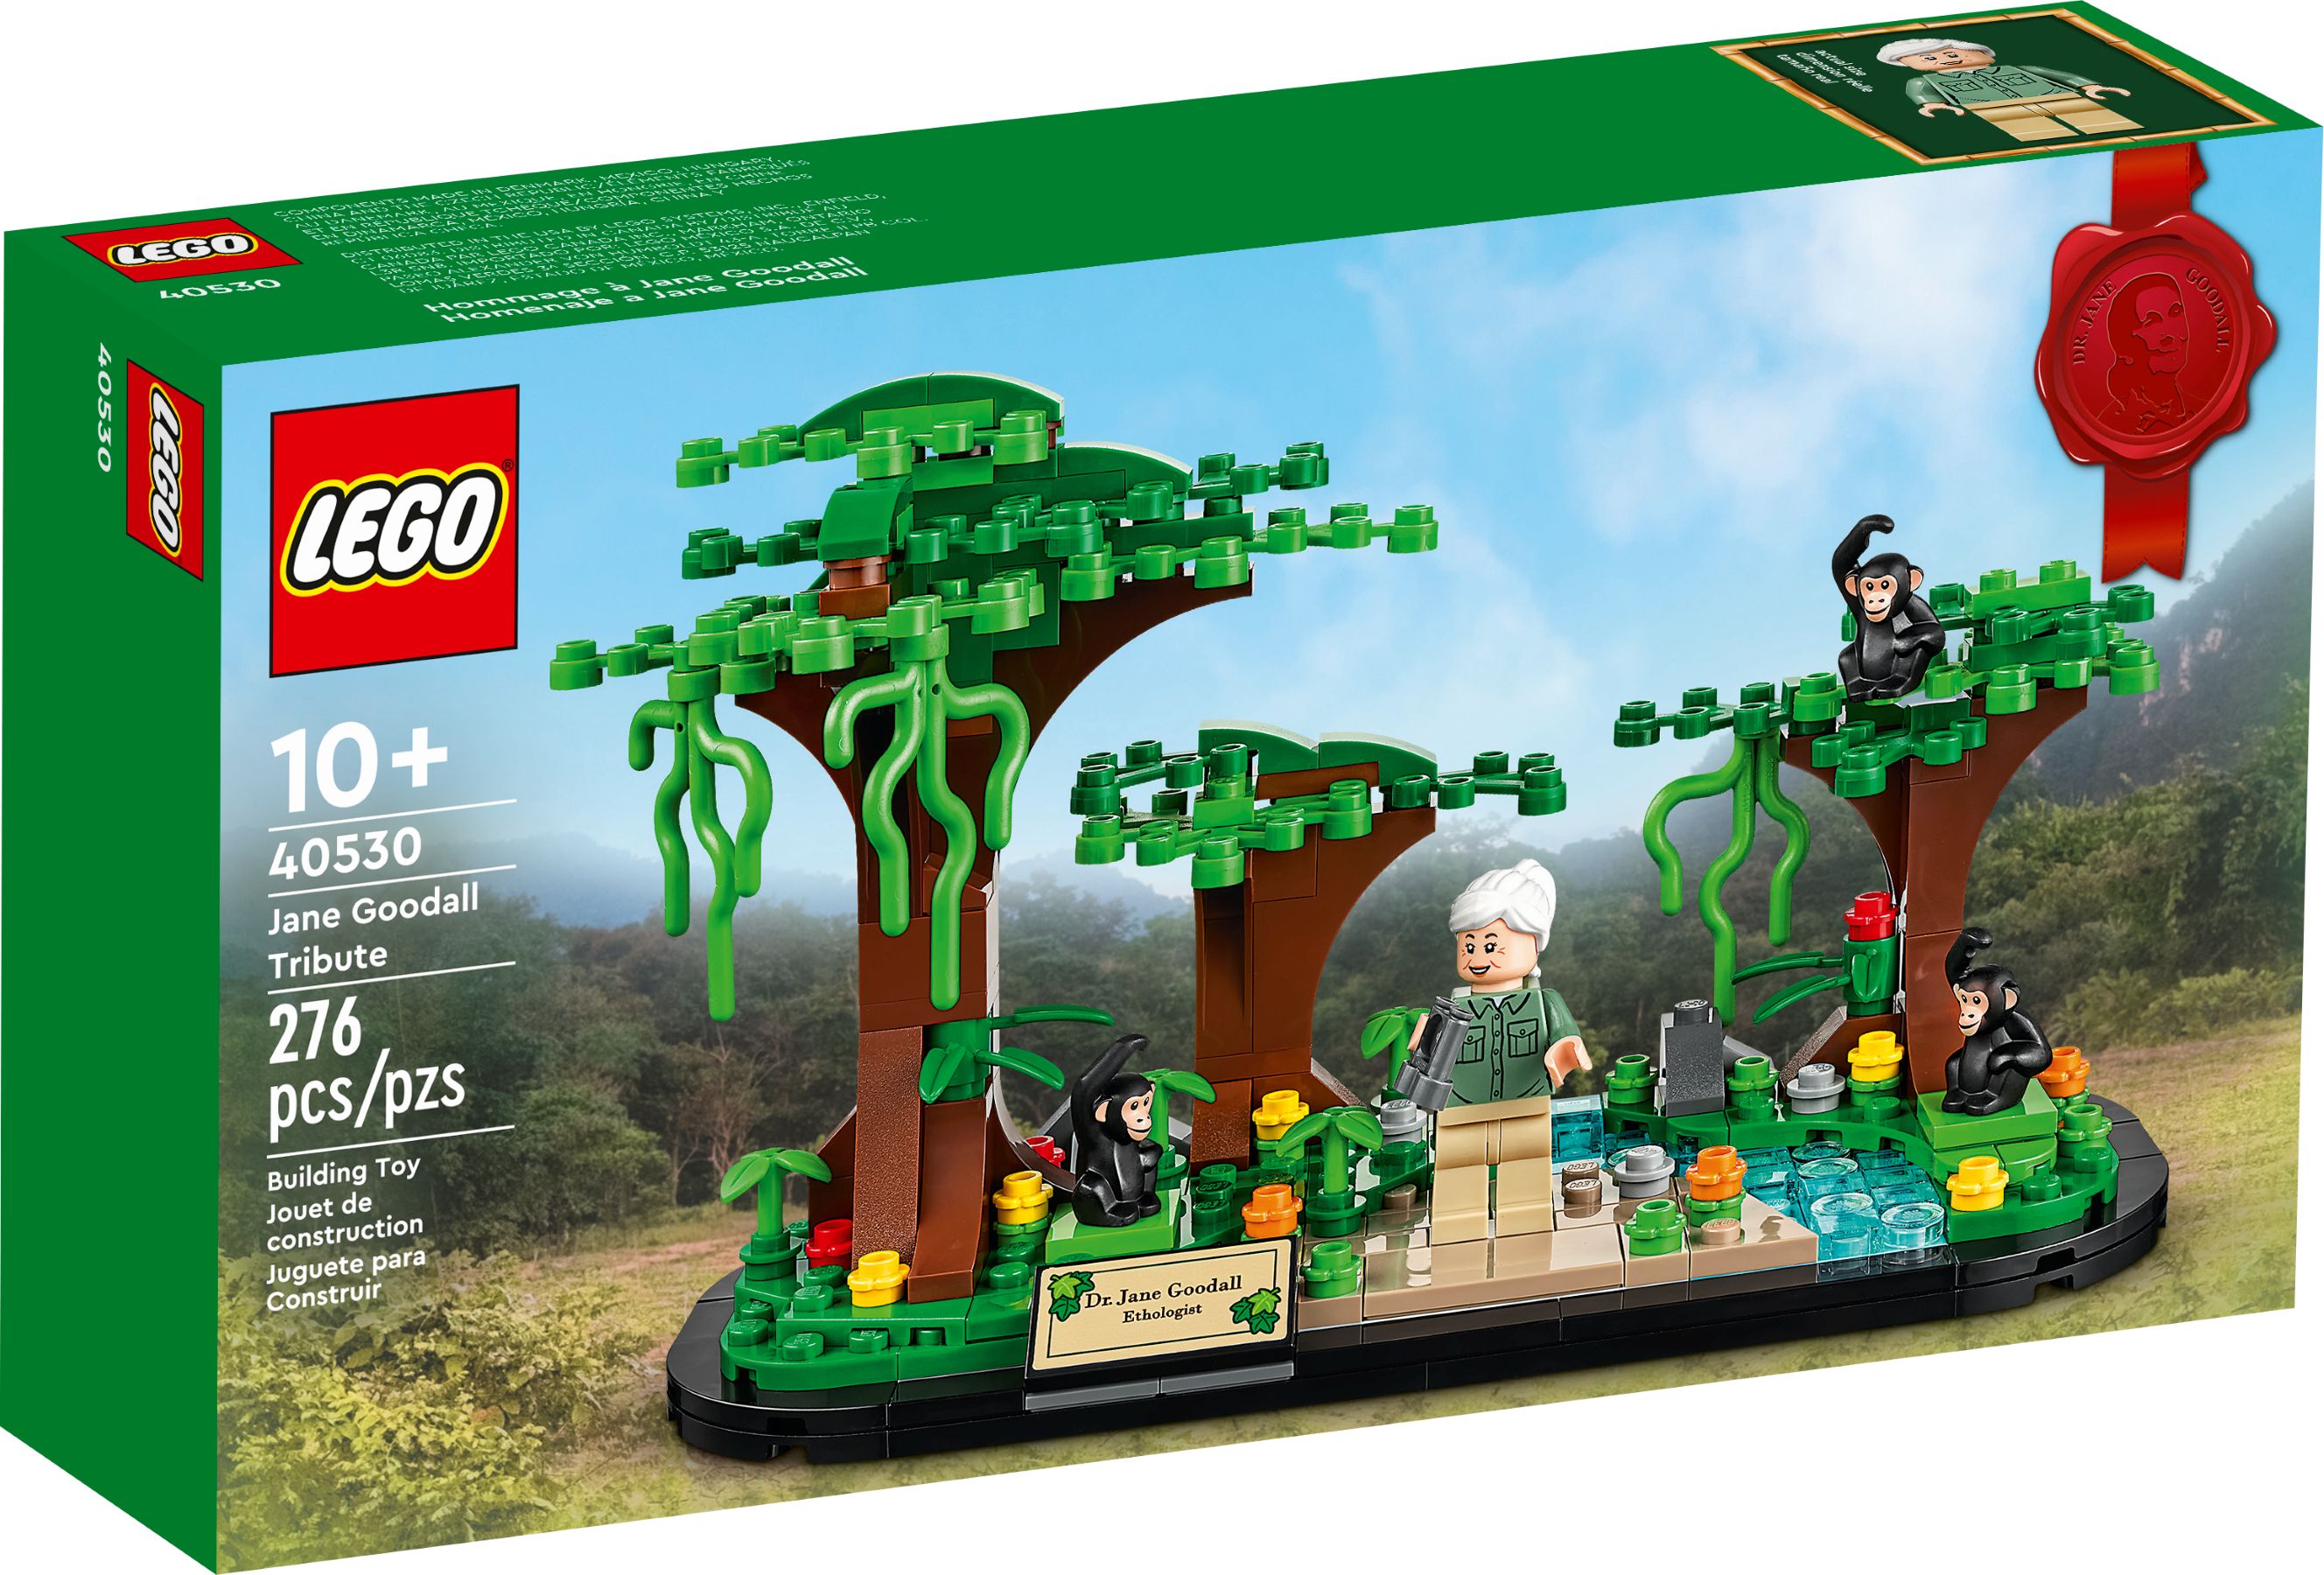 LEGO Hommage an Jane Goodall (40530) - im GOLDSTIEN.SHOP verfügbar mit Gratisversand ab Schweizer Lager! (5702017164045)